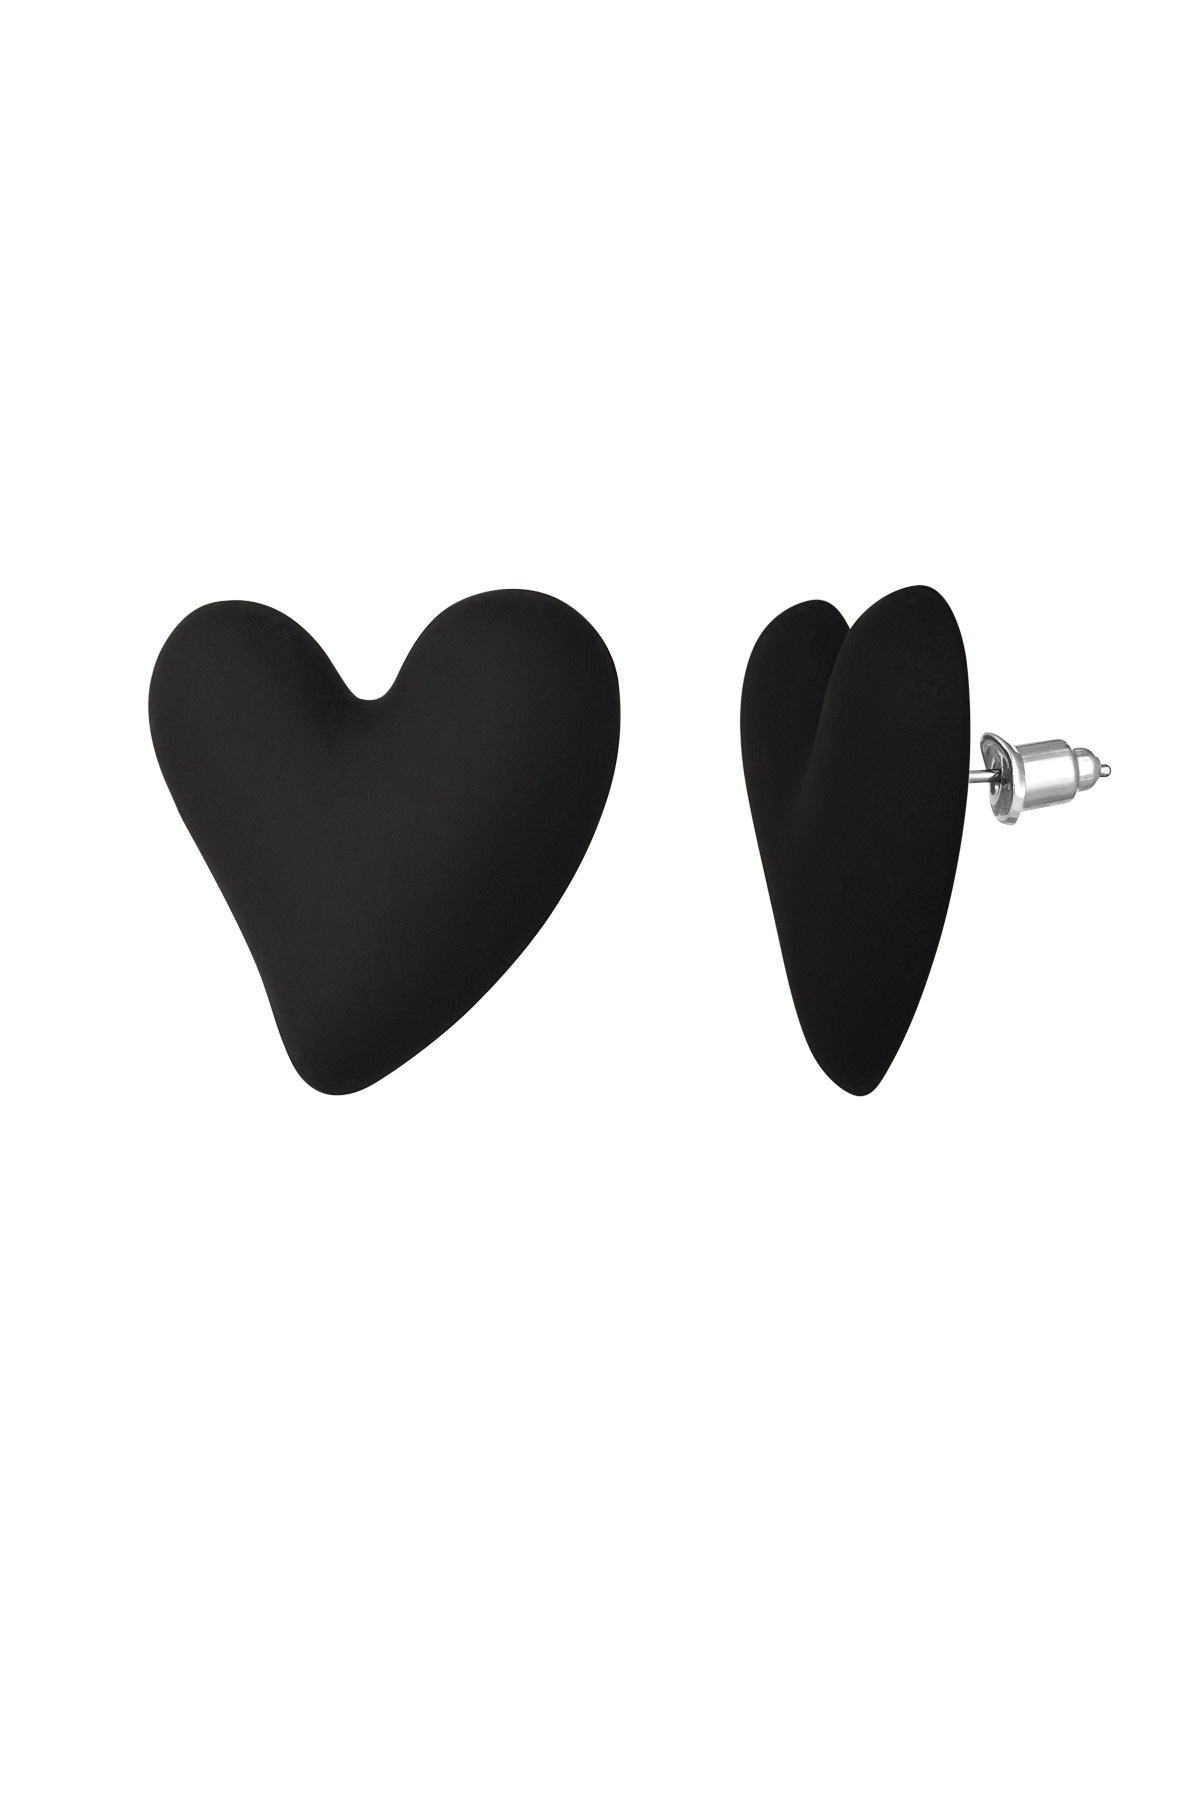 Colorful love earrings - black